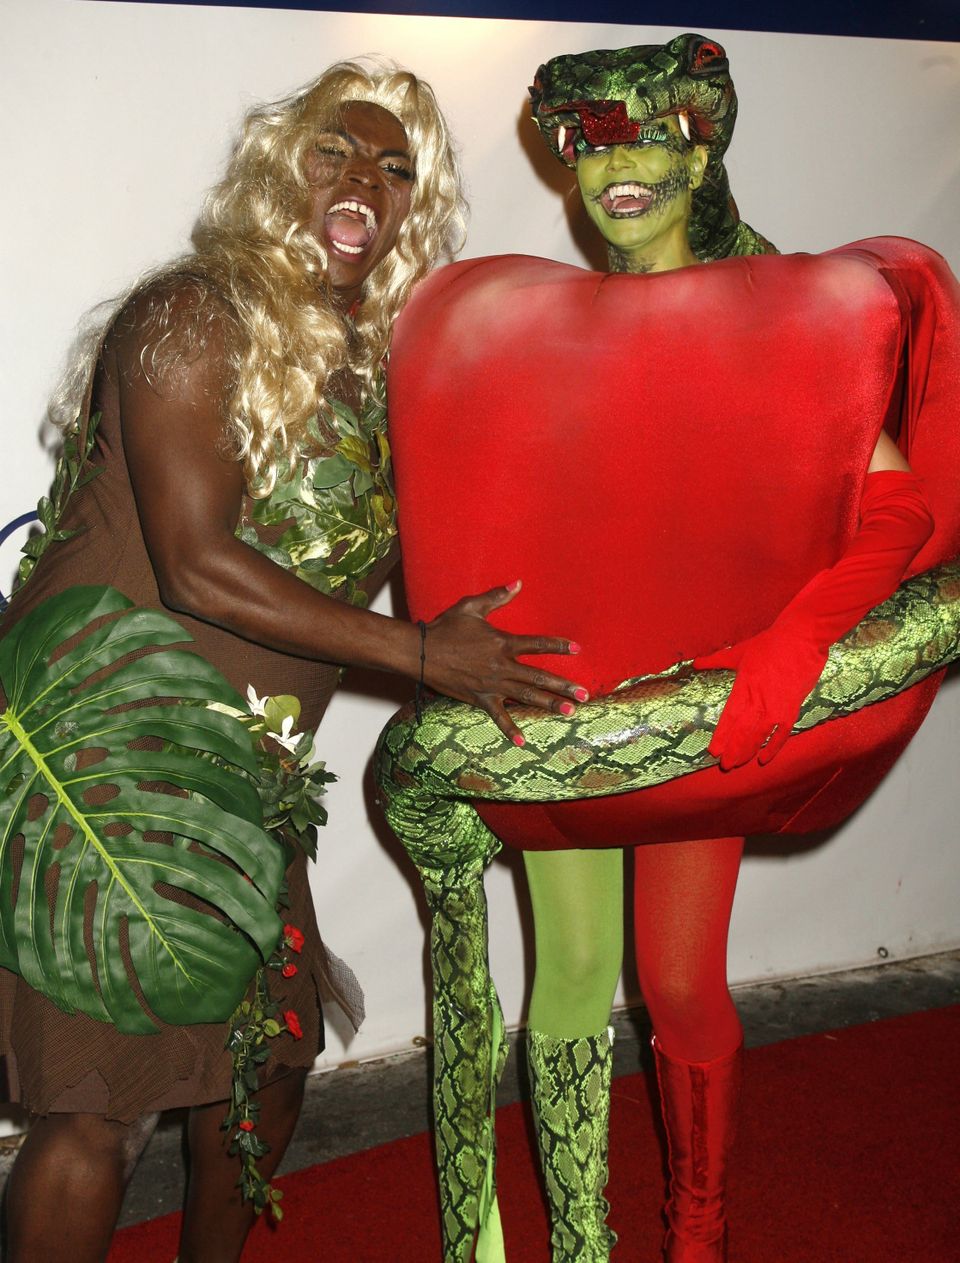 En mann med blond parykk og blader på kroppen holder rundt en kvinne med et stort eple-kostyme og en kunstig slange.